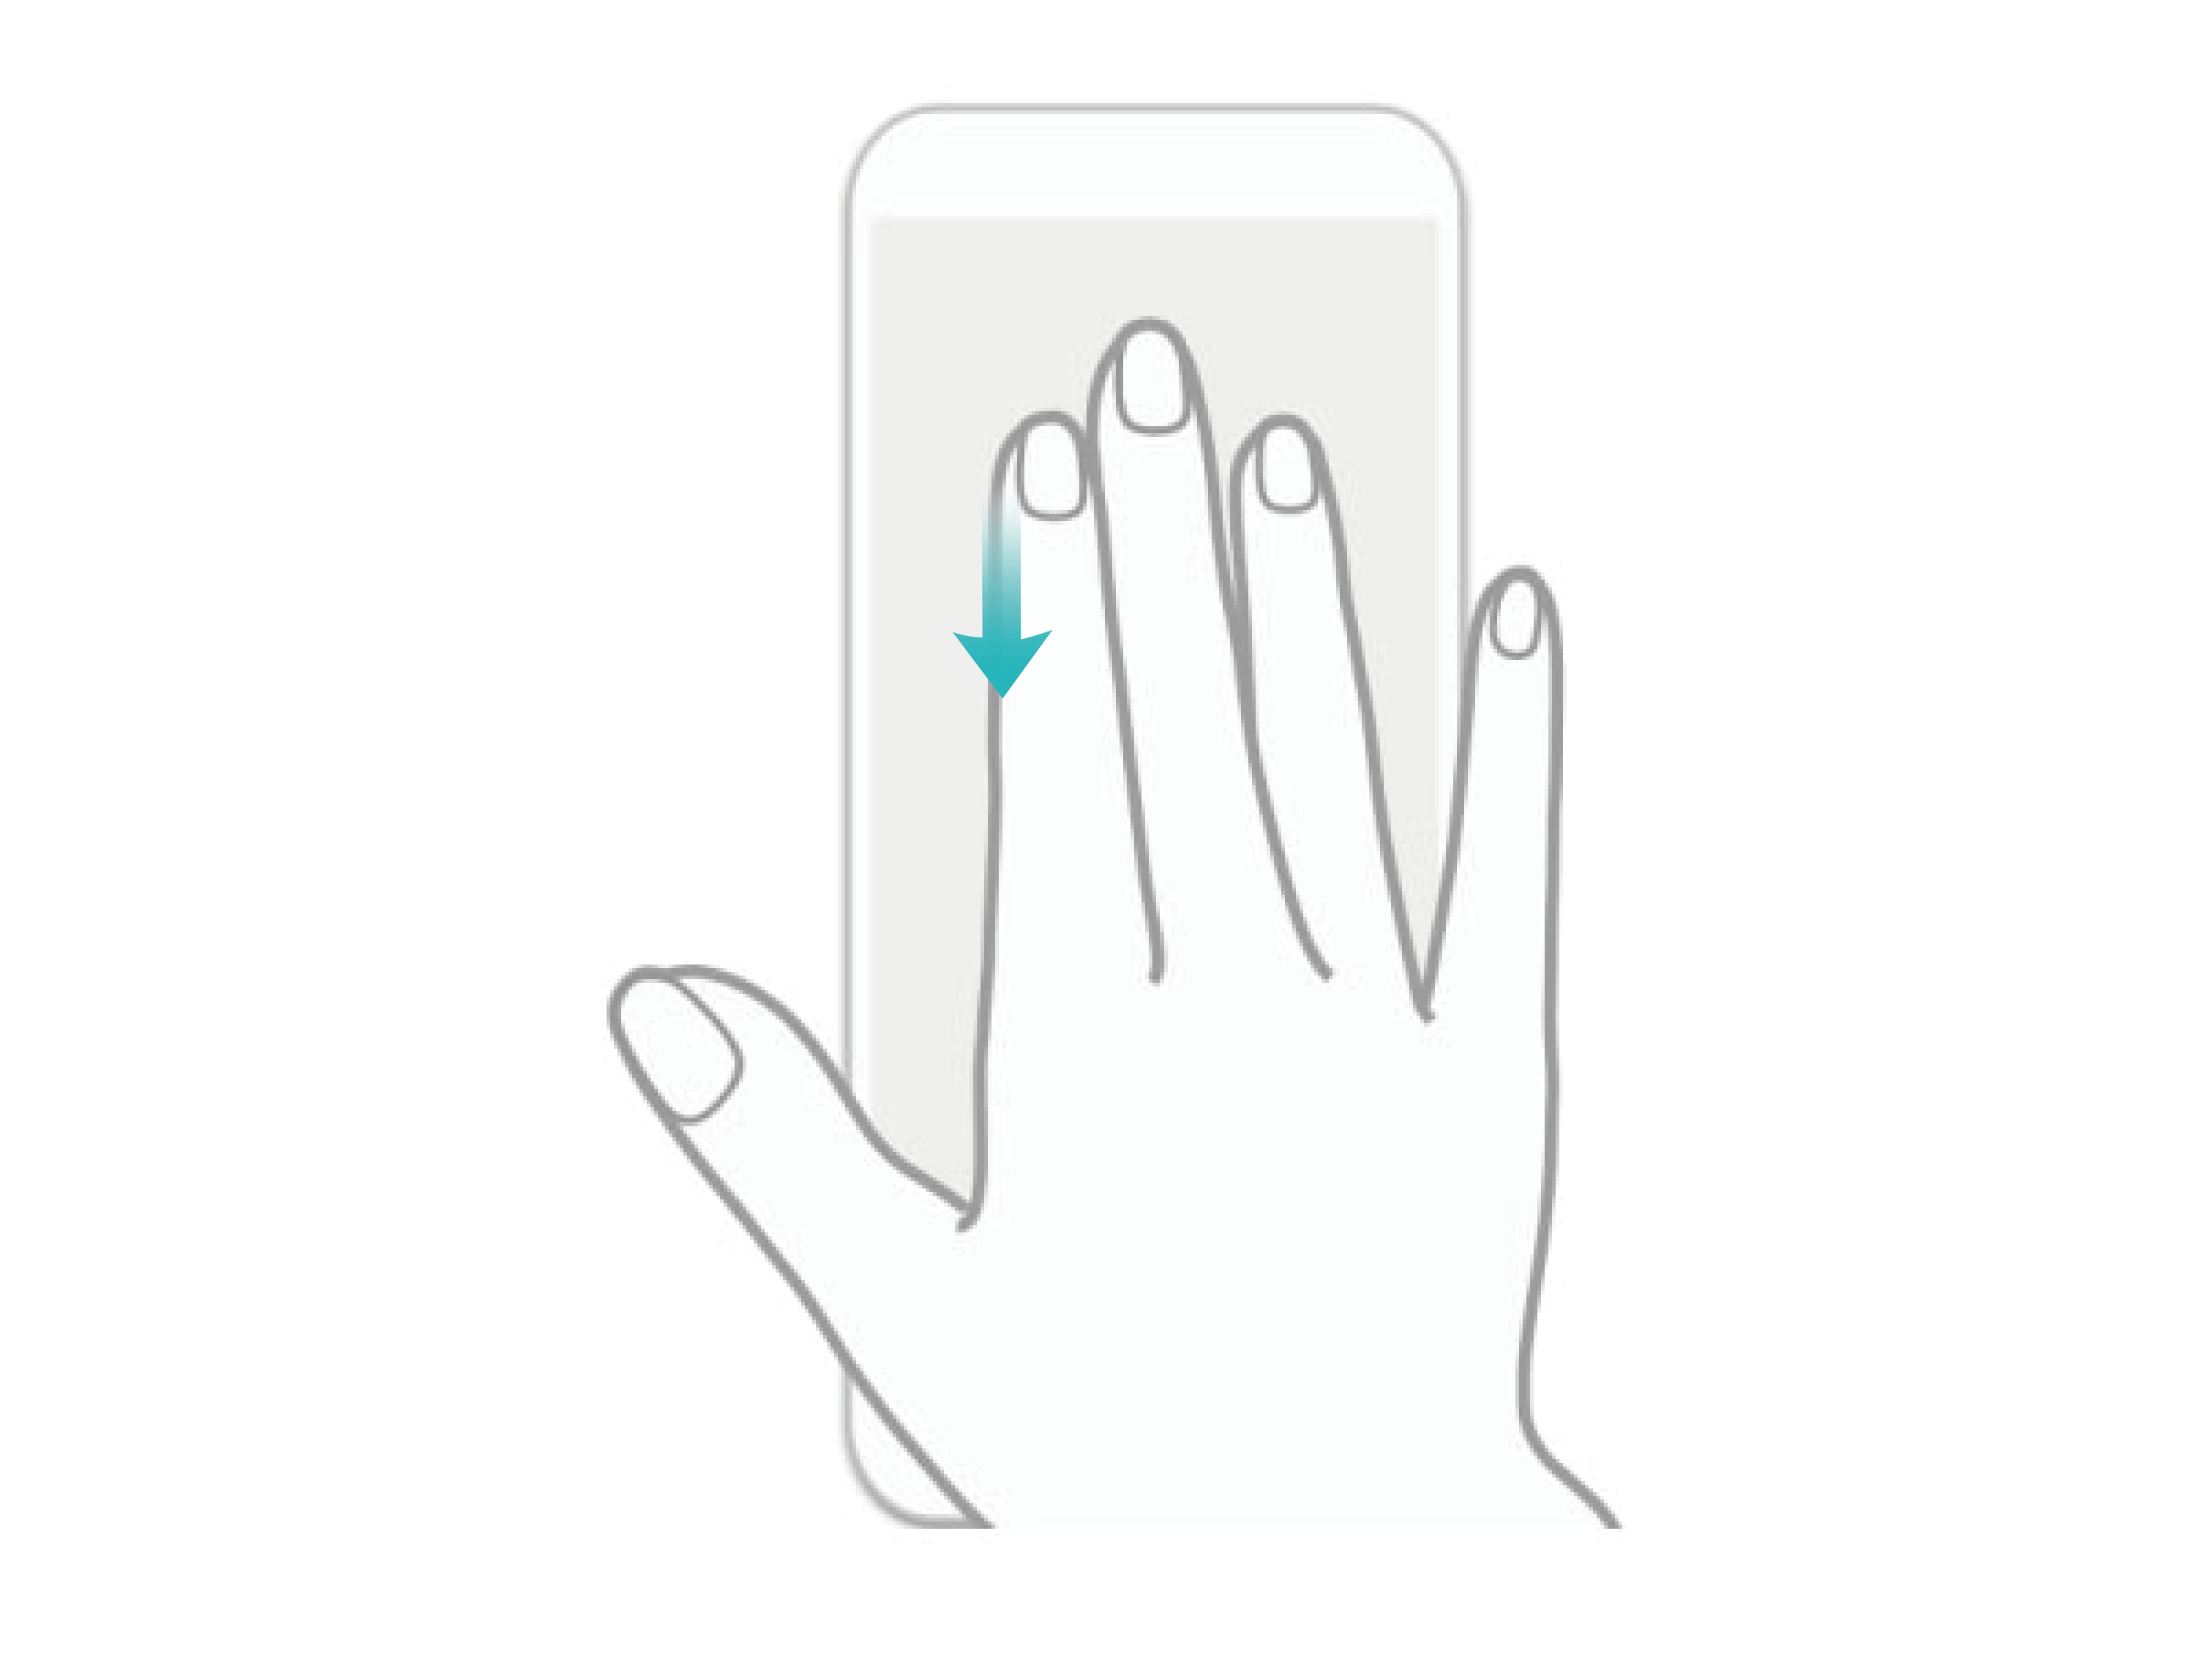 使用三指下滑截屏轻松操作手机 如何使用三指下滑截屏 如何截屏 华为官网